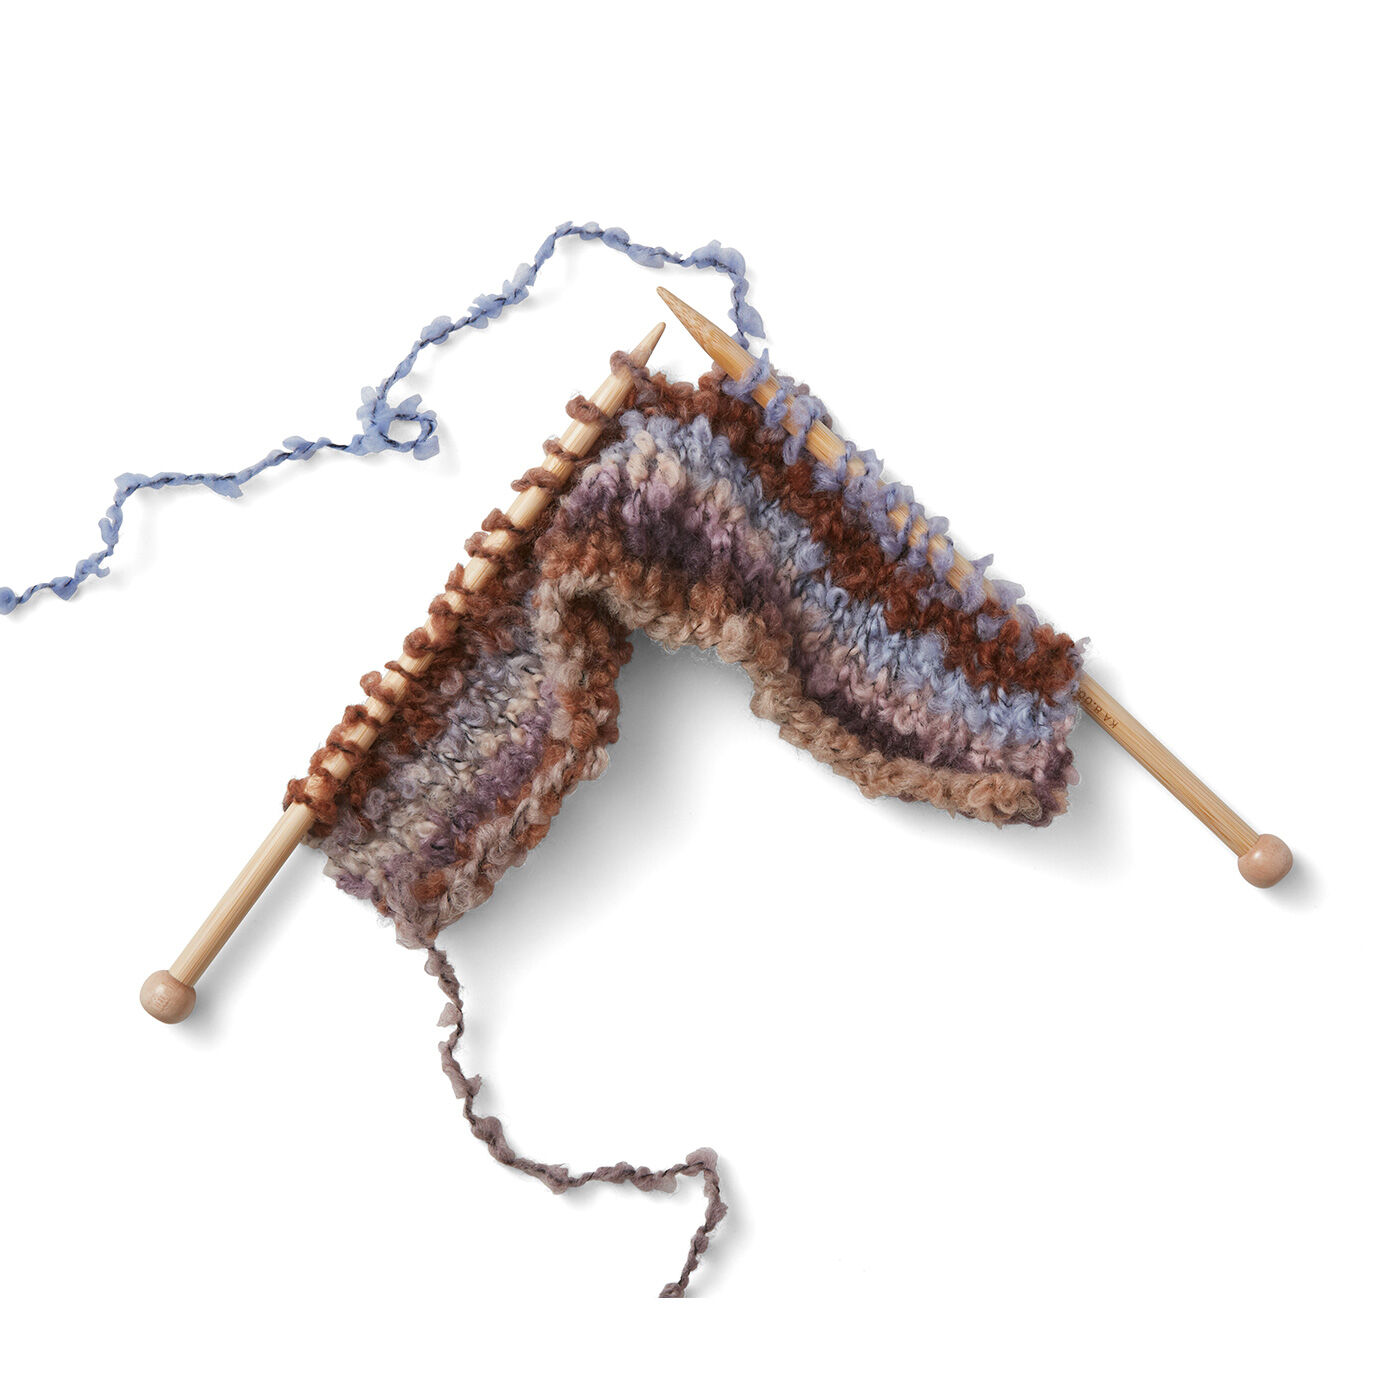 変わり糸でまっすぐ編んでつなげよう 棒針パッチワーク風編み物の会 